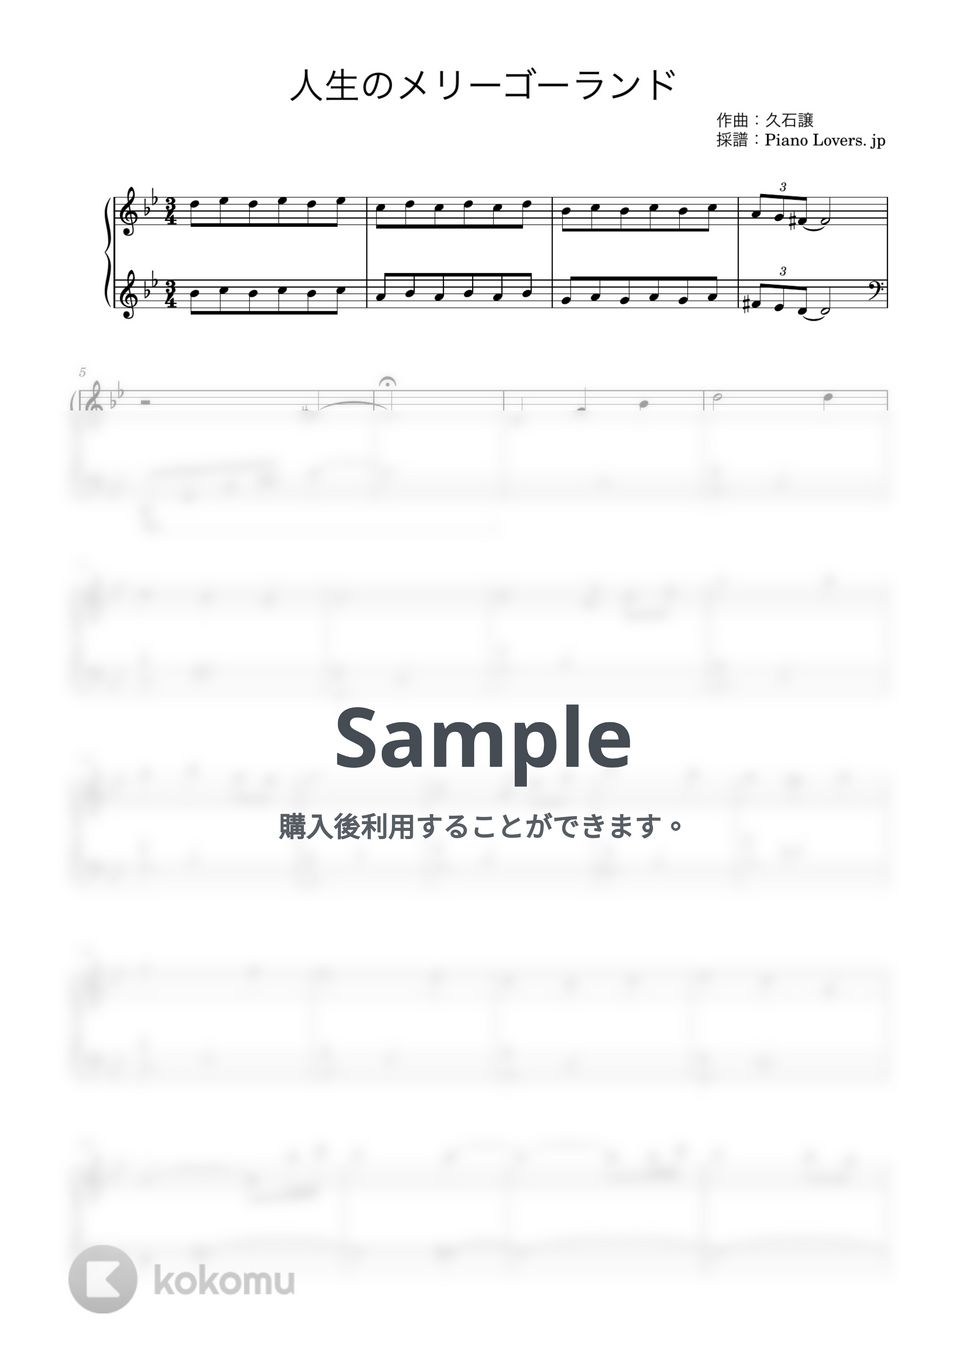 久石譲 - 人生のメリーゴーランド (ハウルの動く城) by Piano Lovers. jp